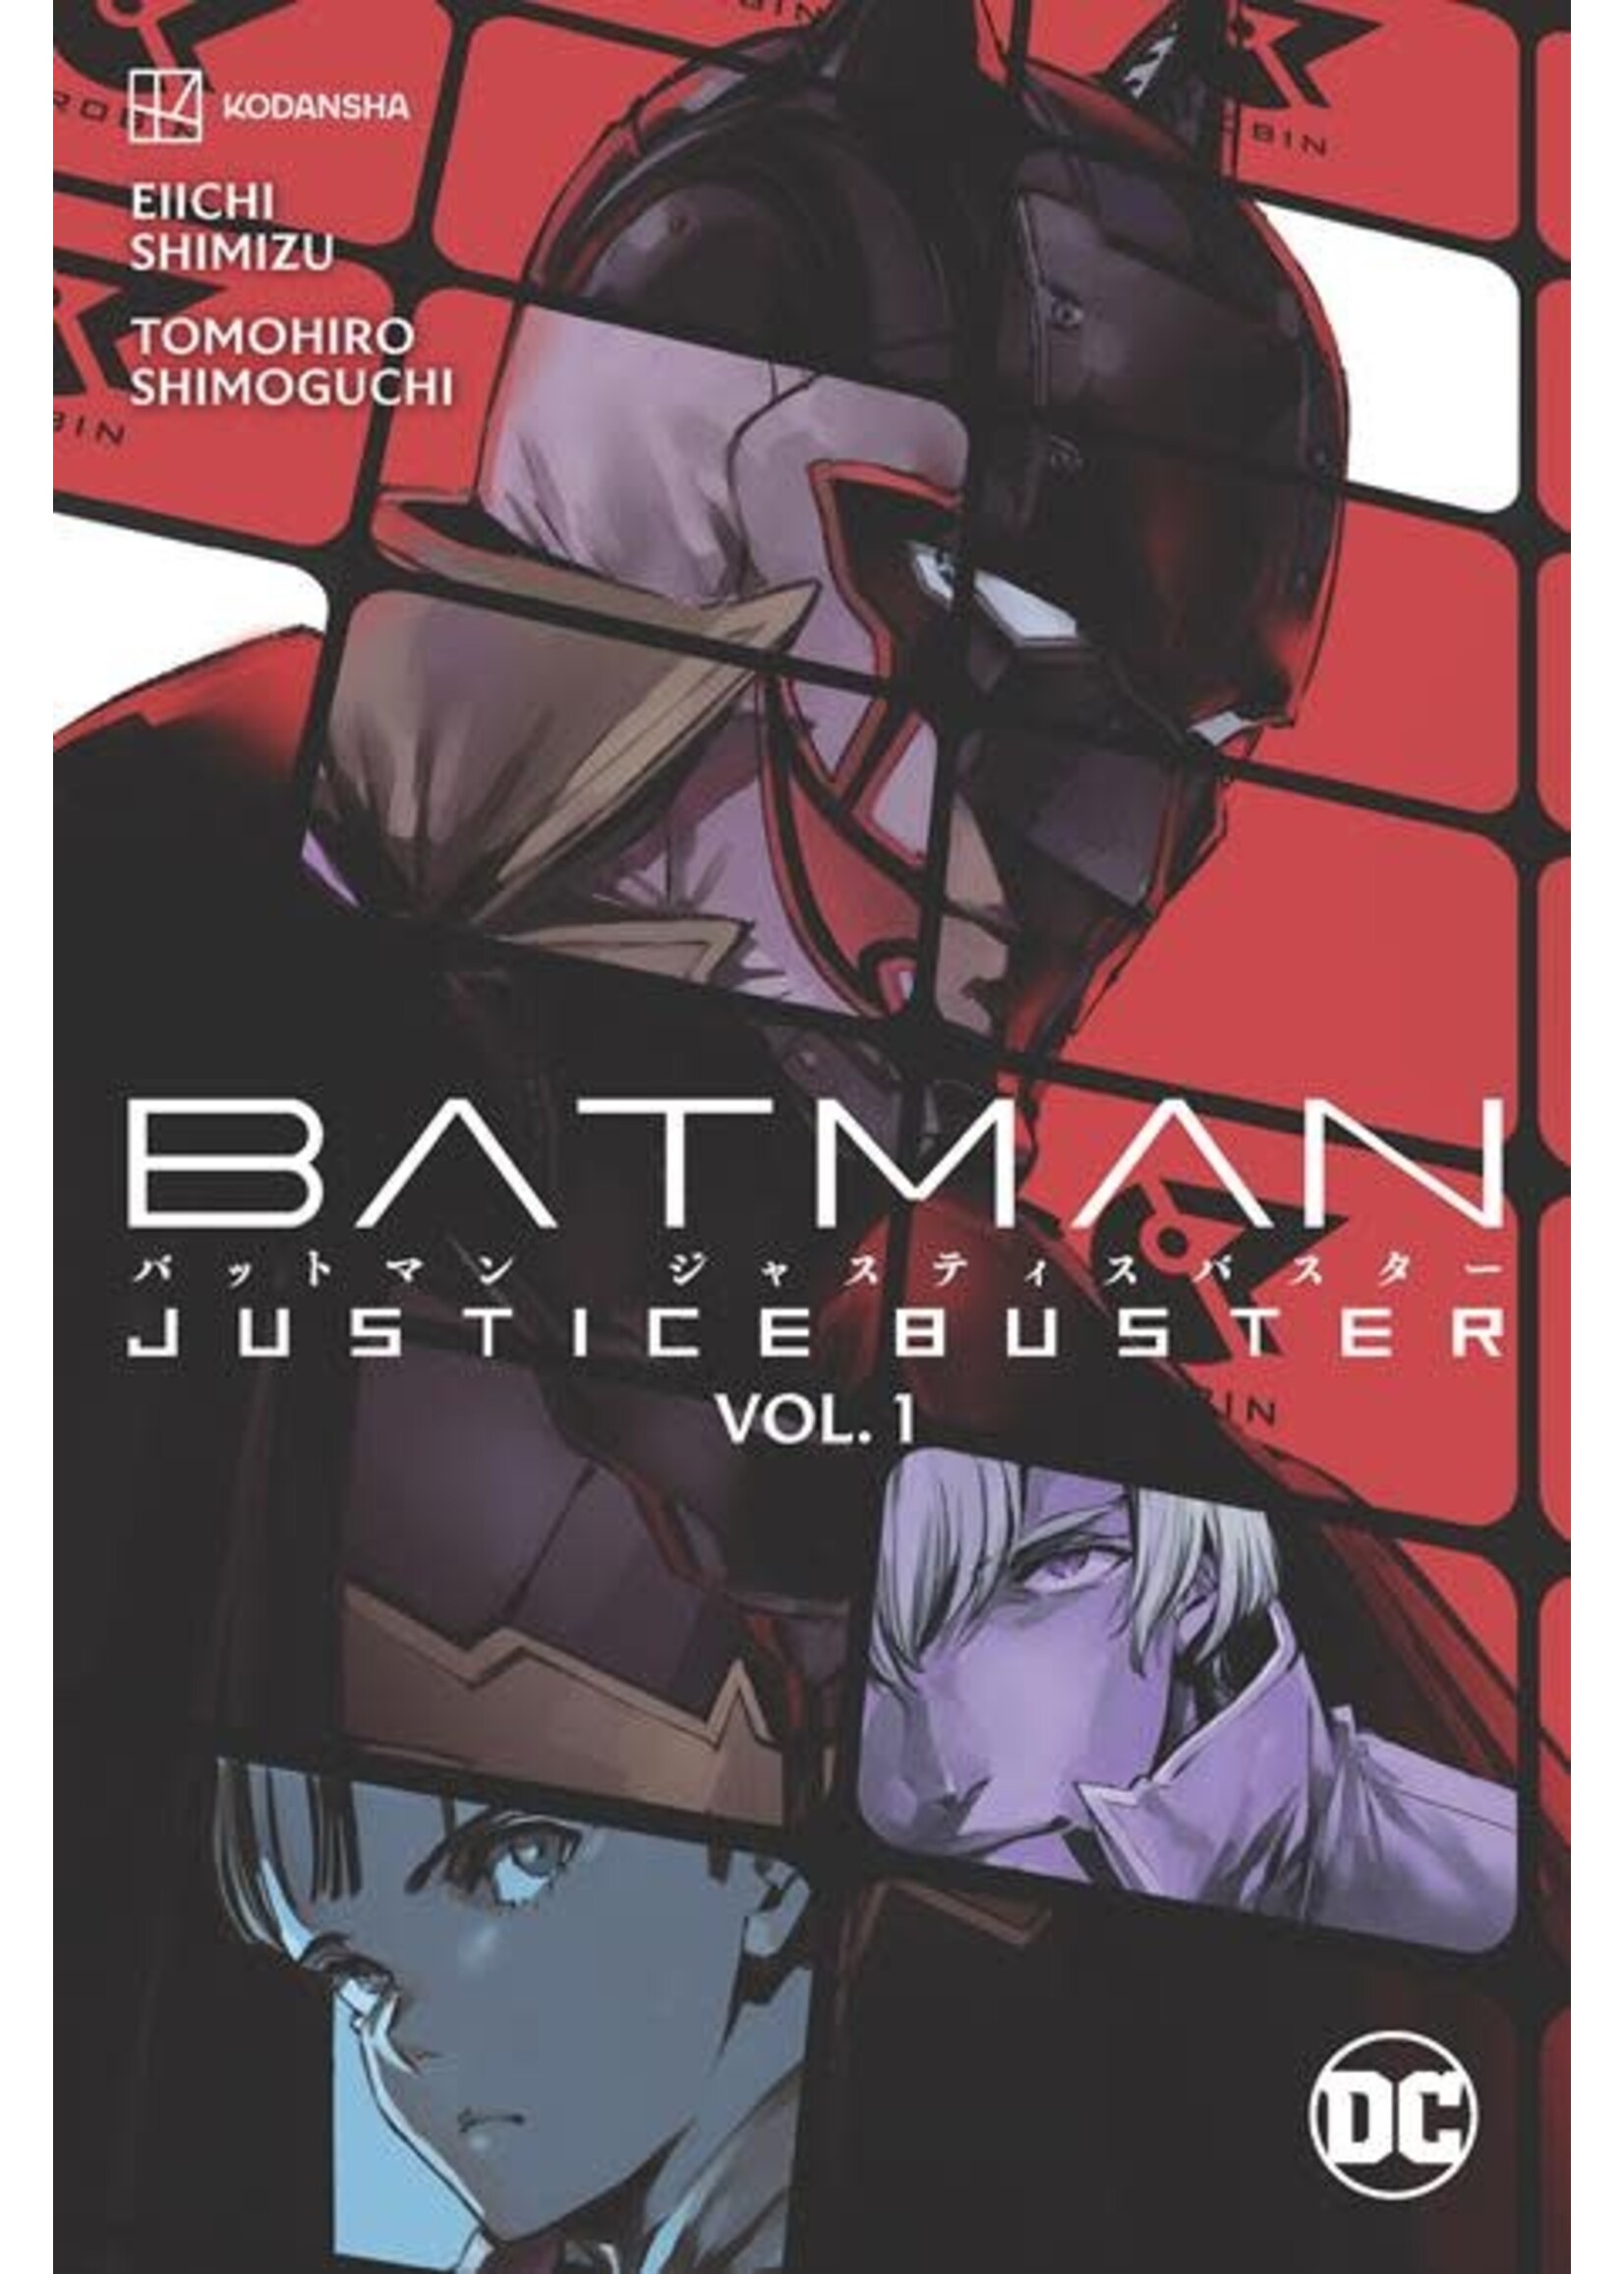 DC COMICS BATMAN JUSTICE BUSTER VOL 01